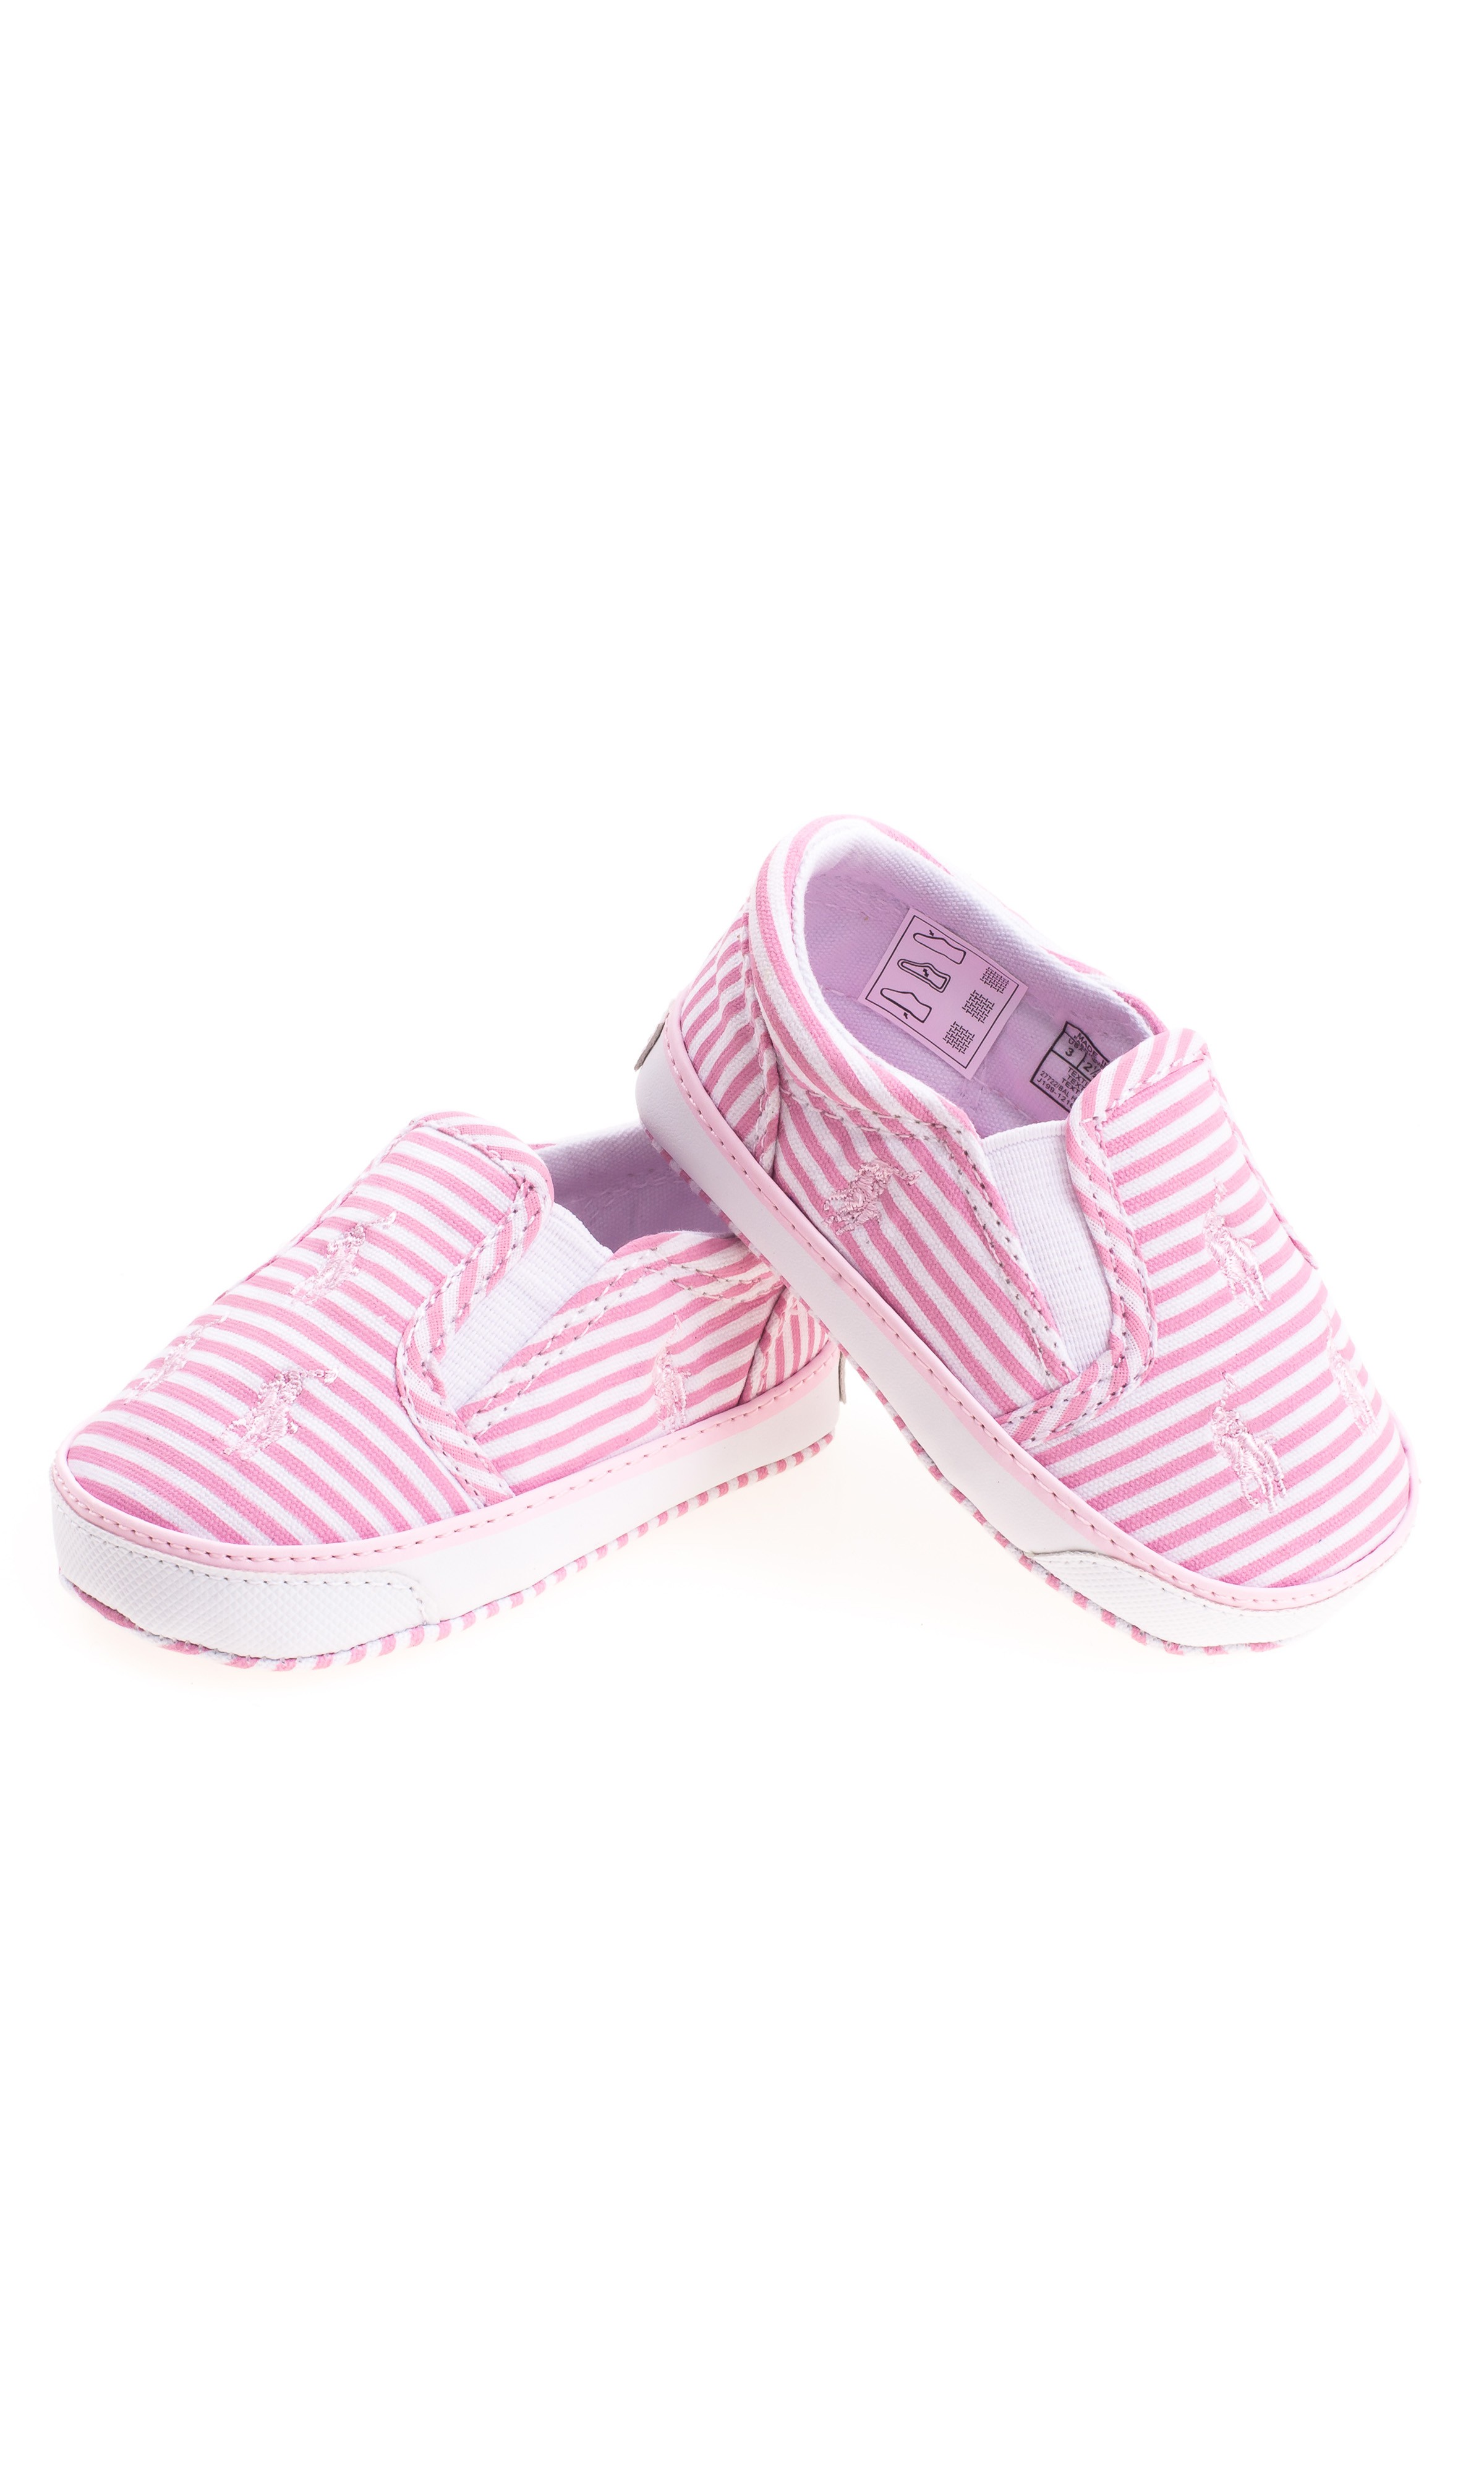 ralph lauren baby shoes pink